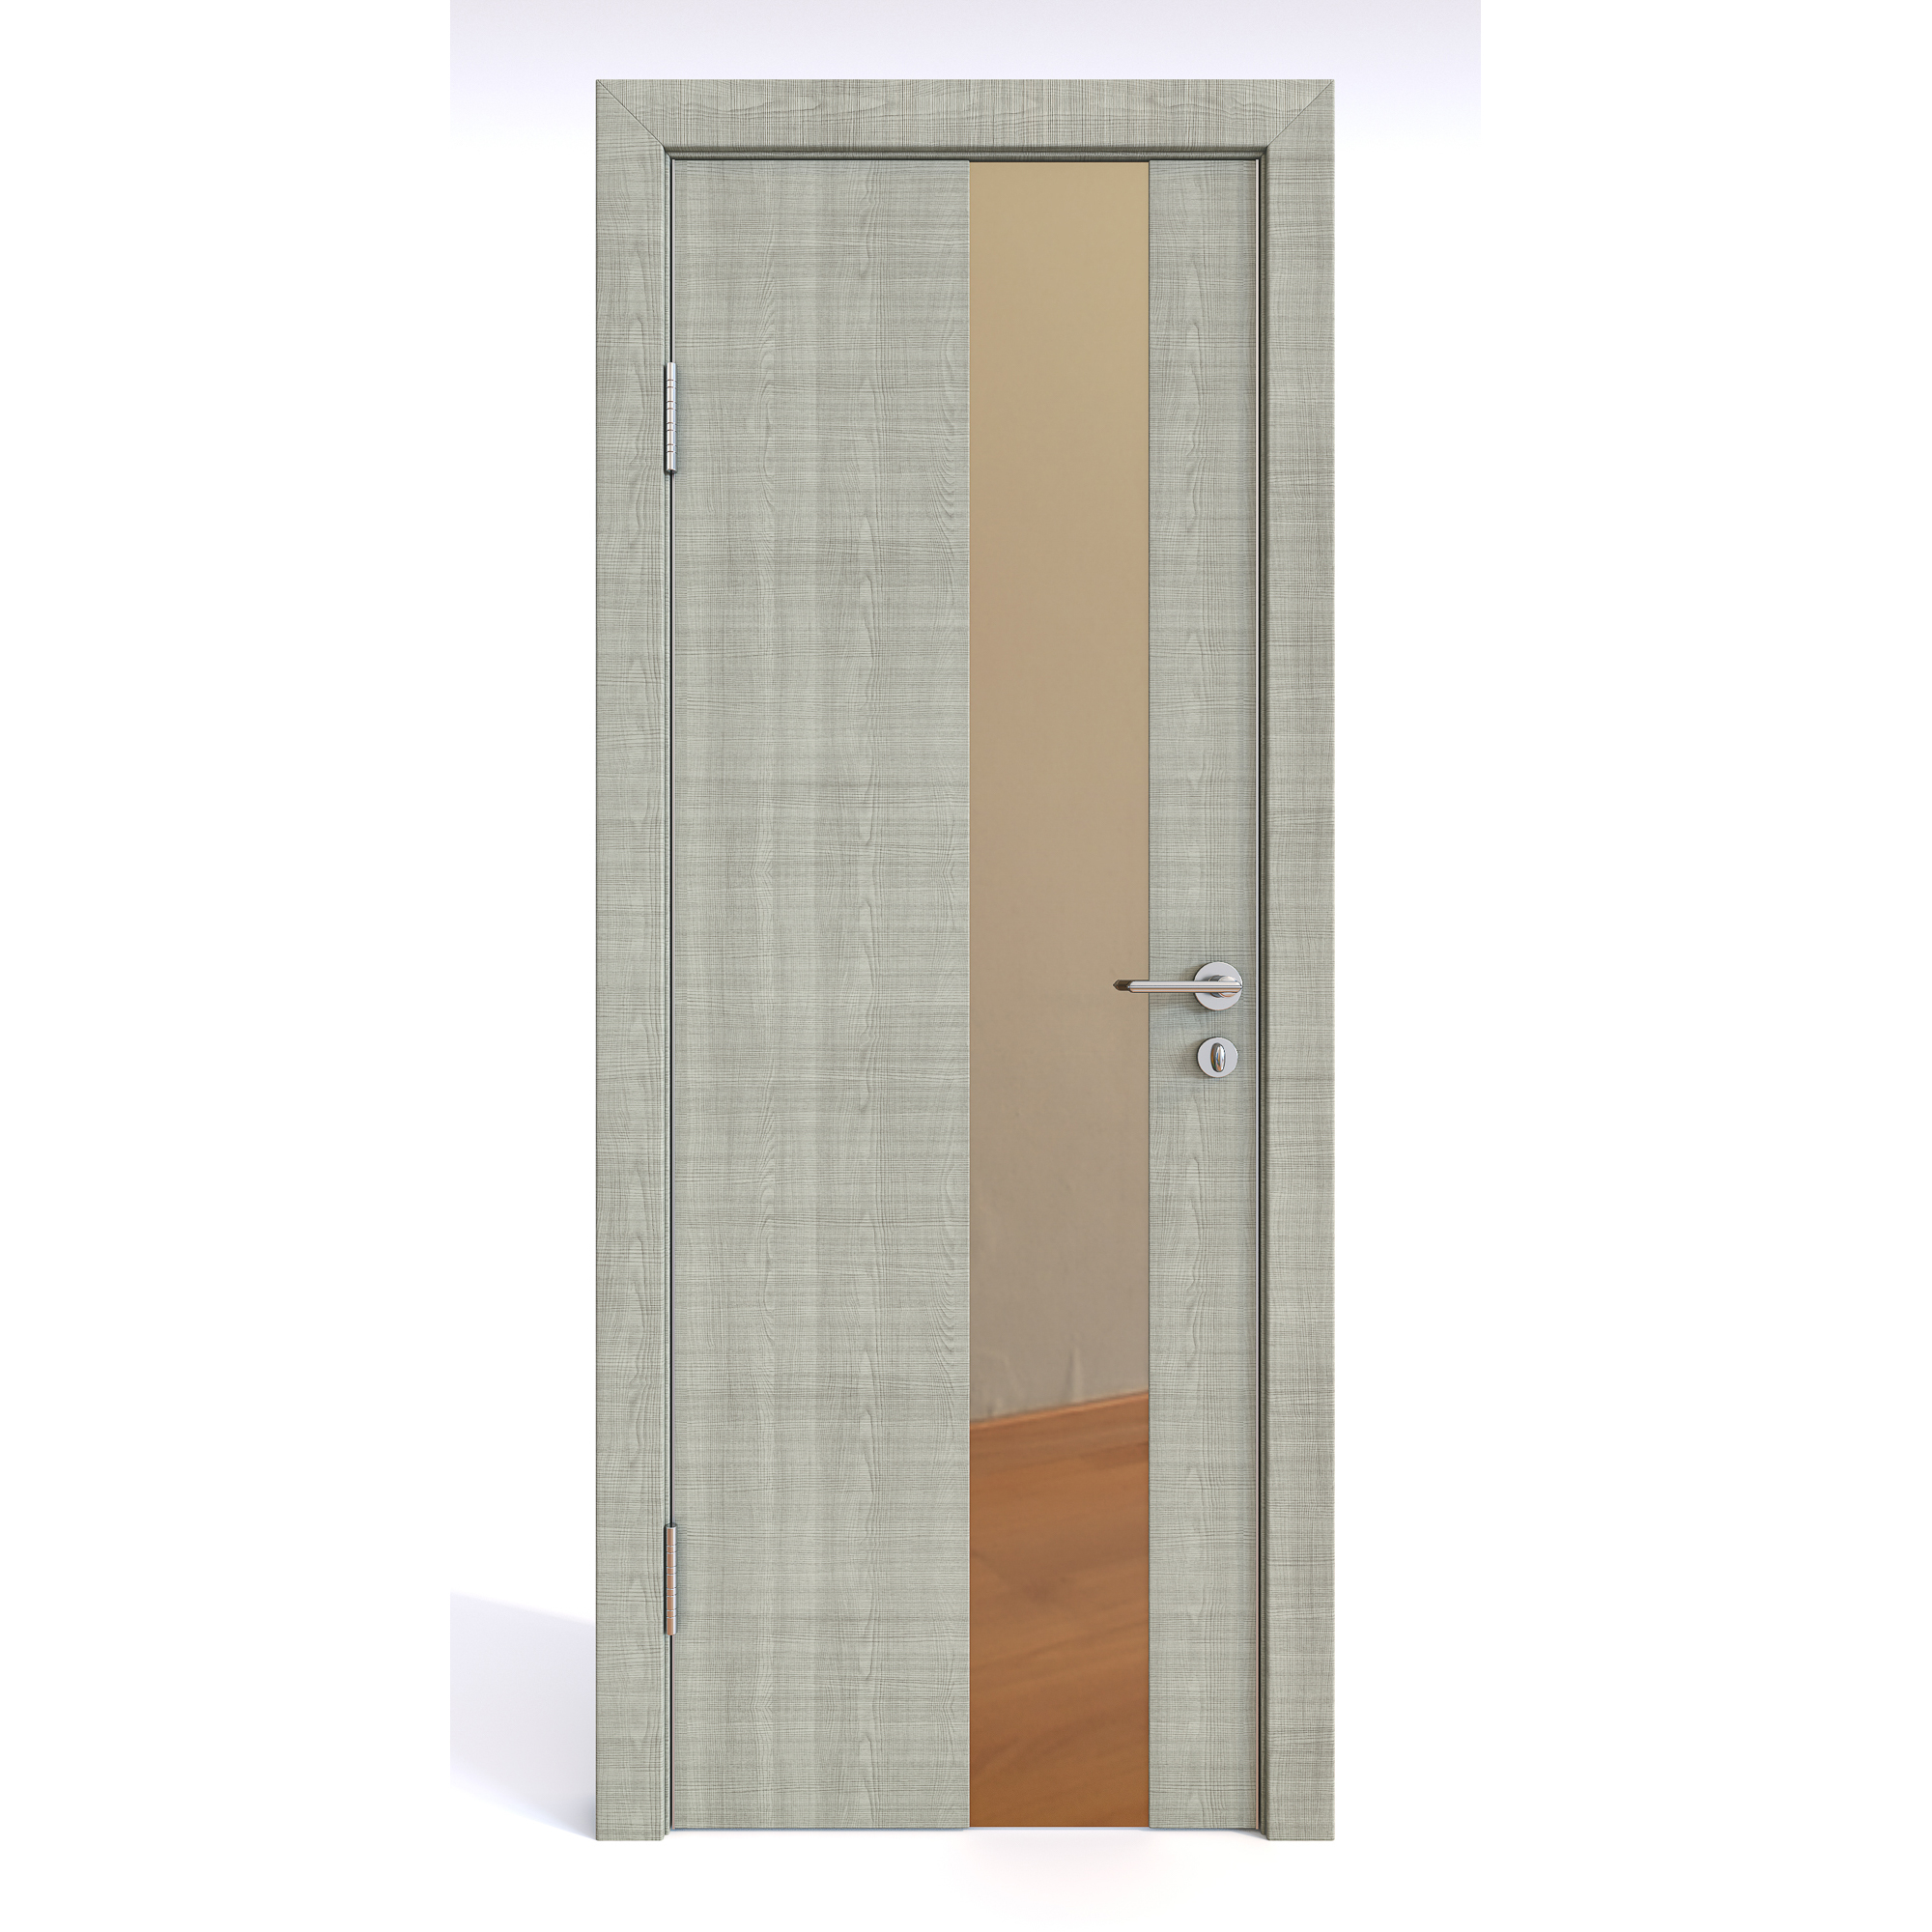 фото Межкомнатная шумоизоляционная дверь до-604 серый дуб/бронза 200х70 дверная линия